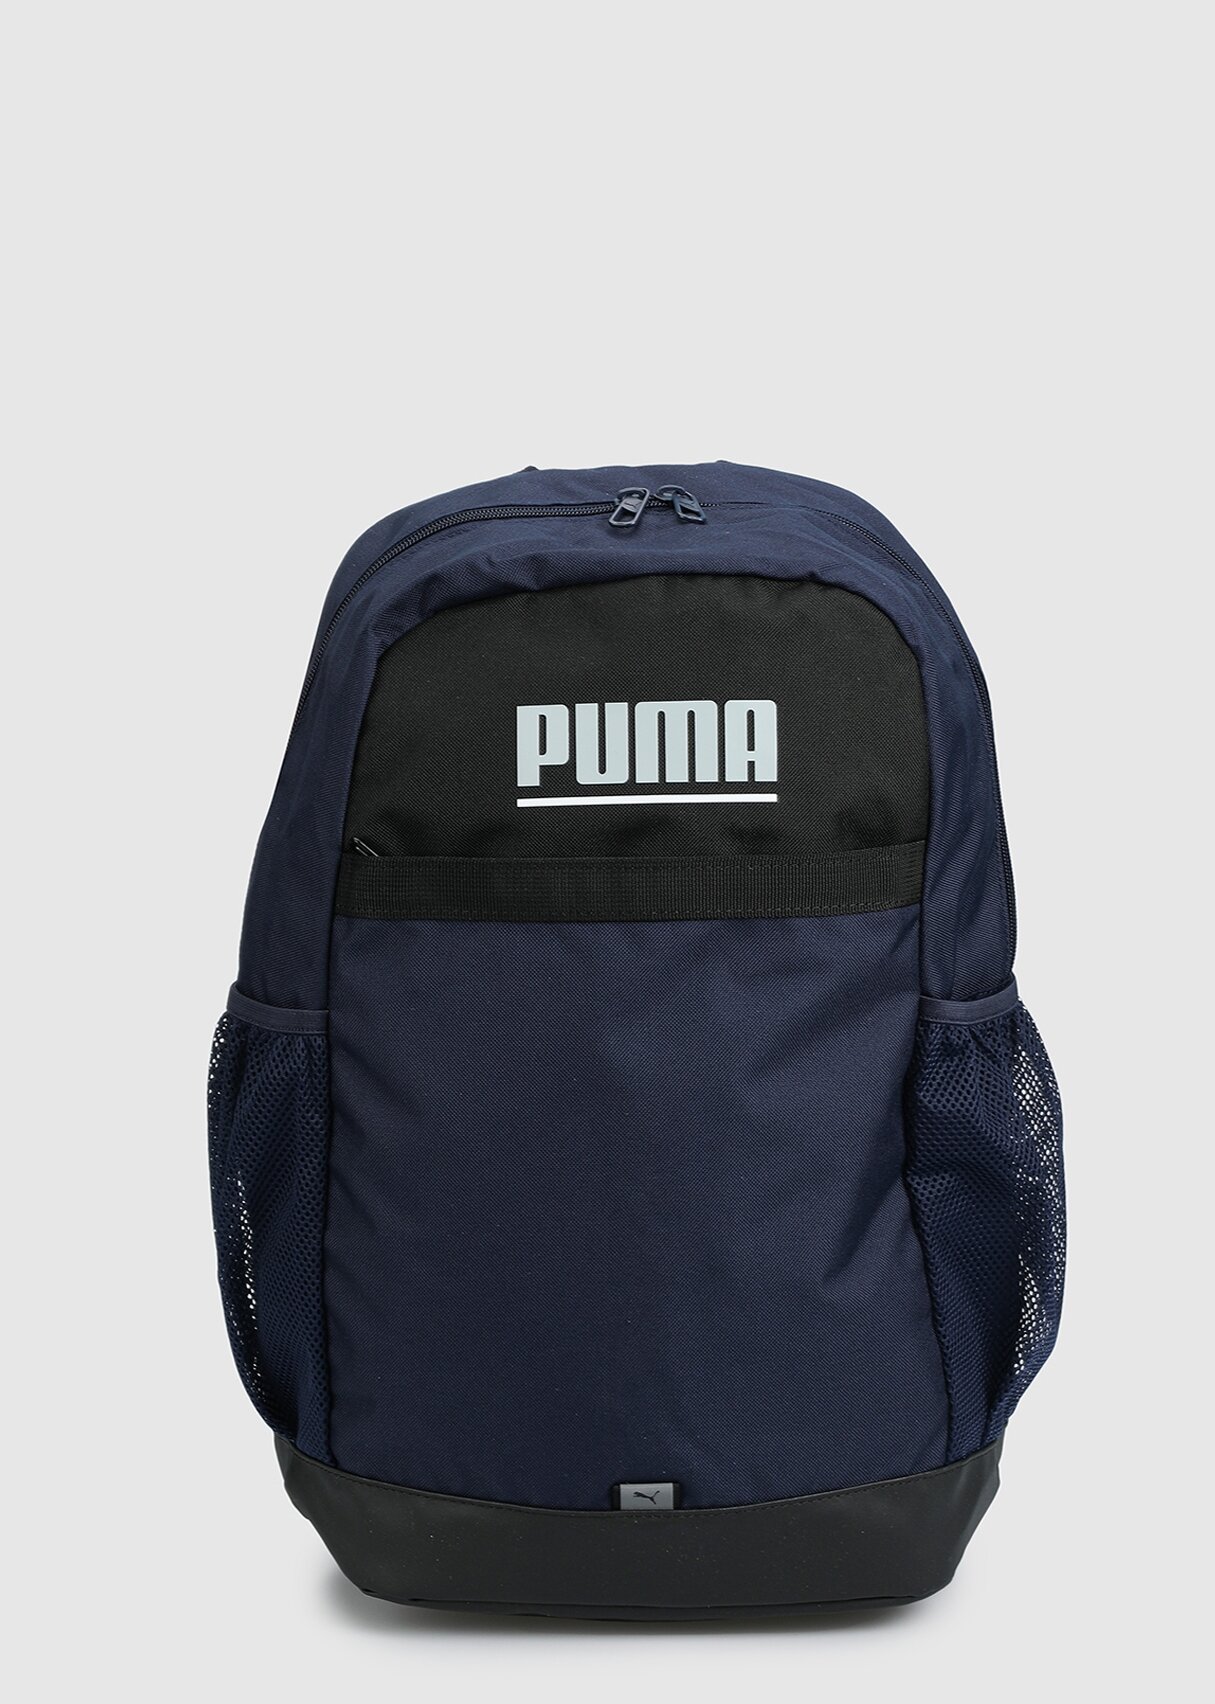 Puma Puma Plus Backpack Puma Navy lacivert unısex sırt Çantası 07961505